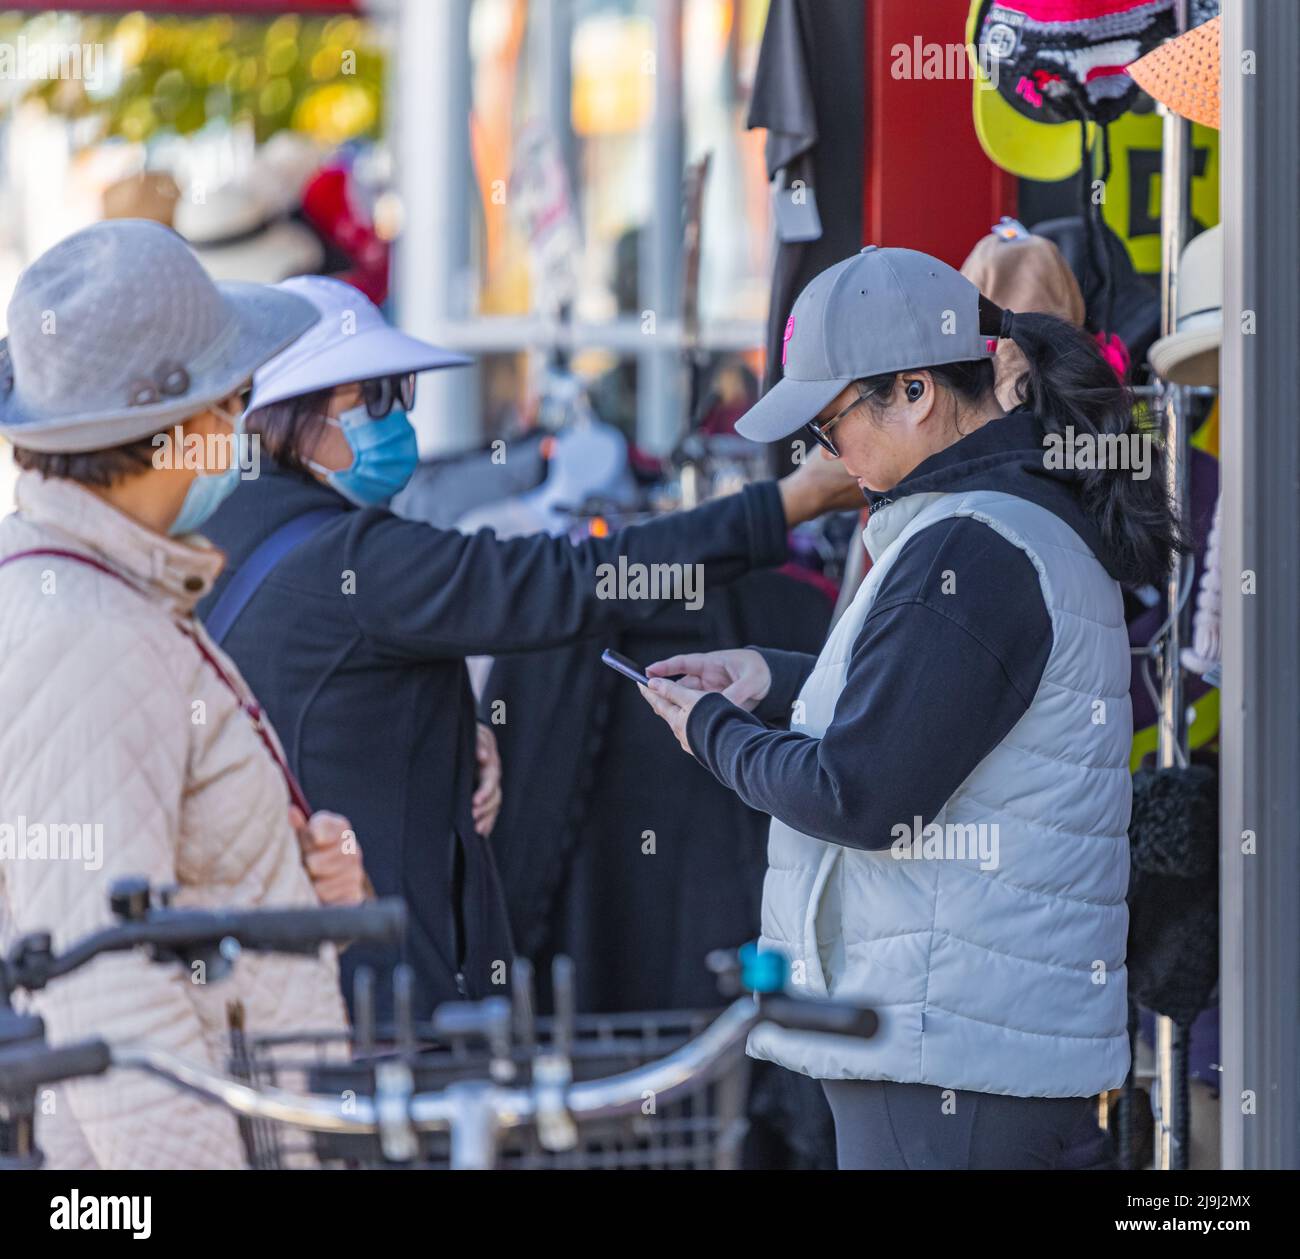 Frauen stöbern auf einem Straßenmarkt in einer Kleiderstange. Kunden suchen und wählen Kleidung, Geschenke auf den Straßenmärkten. Reisefoto, Straßenansicht Stockfoto